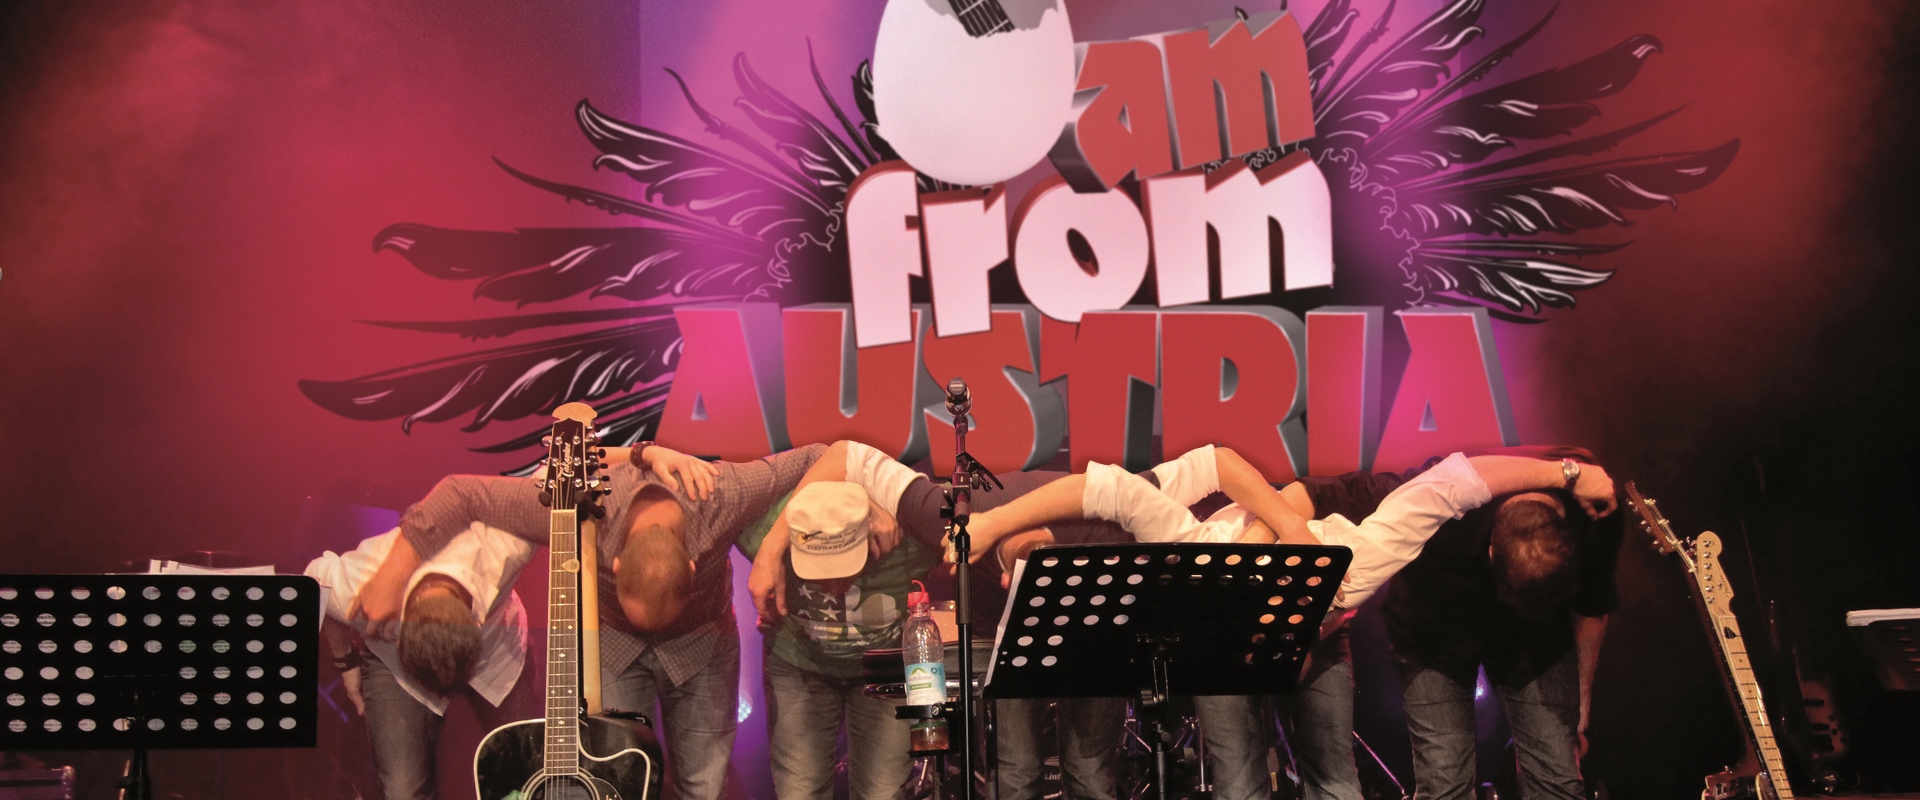 Die Band I am from Austria verneigt sich zusammen vor dem Publikum